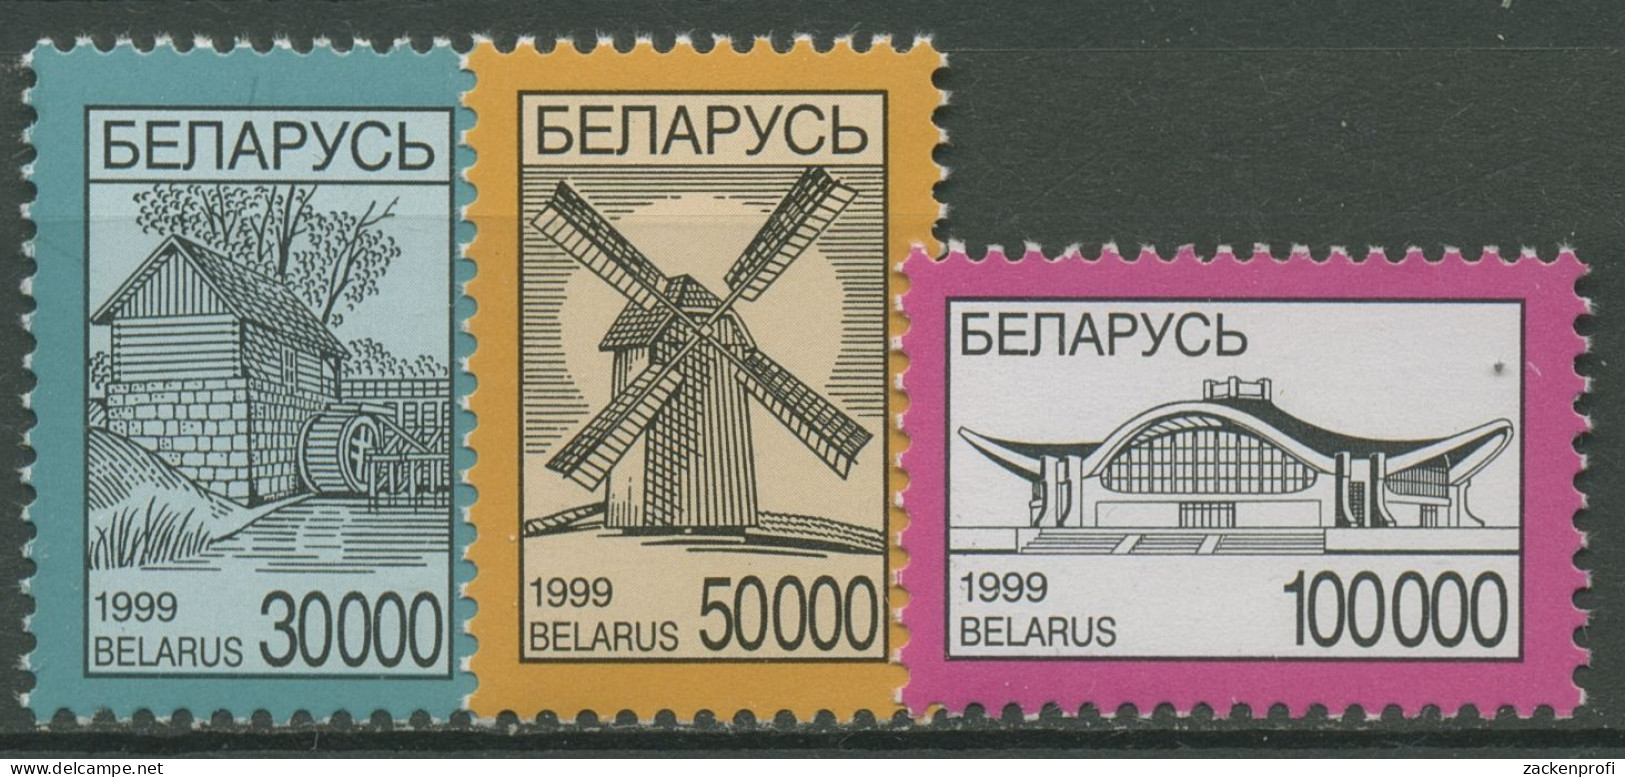 Weißrussland 1999 Nationale Symbole Mühlen 312/14 Postfrisch - Bielorussia